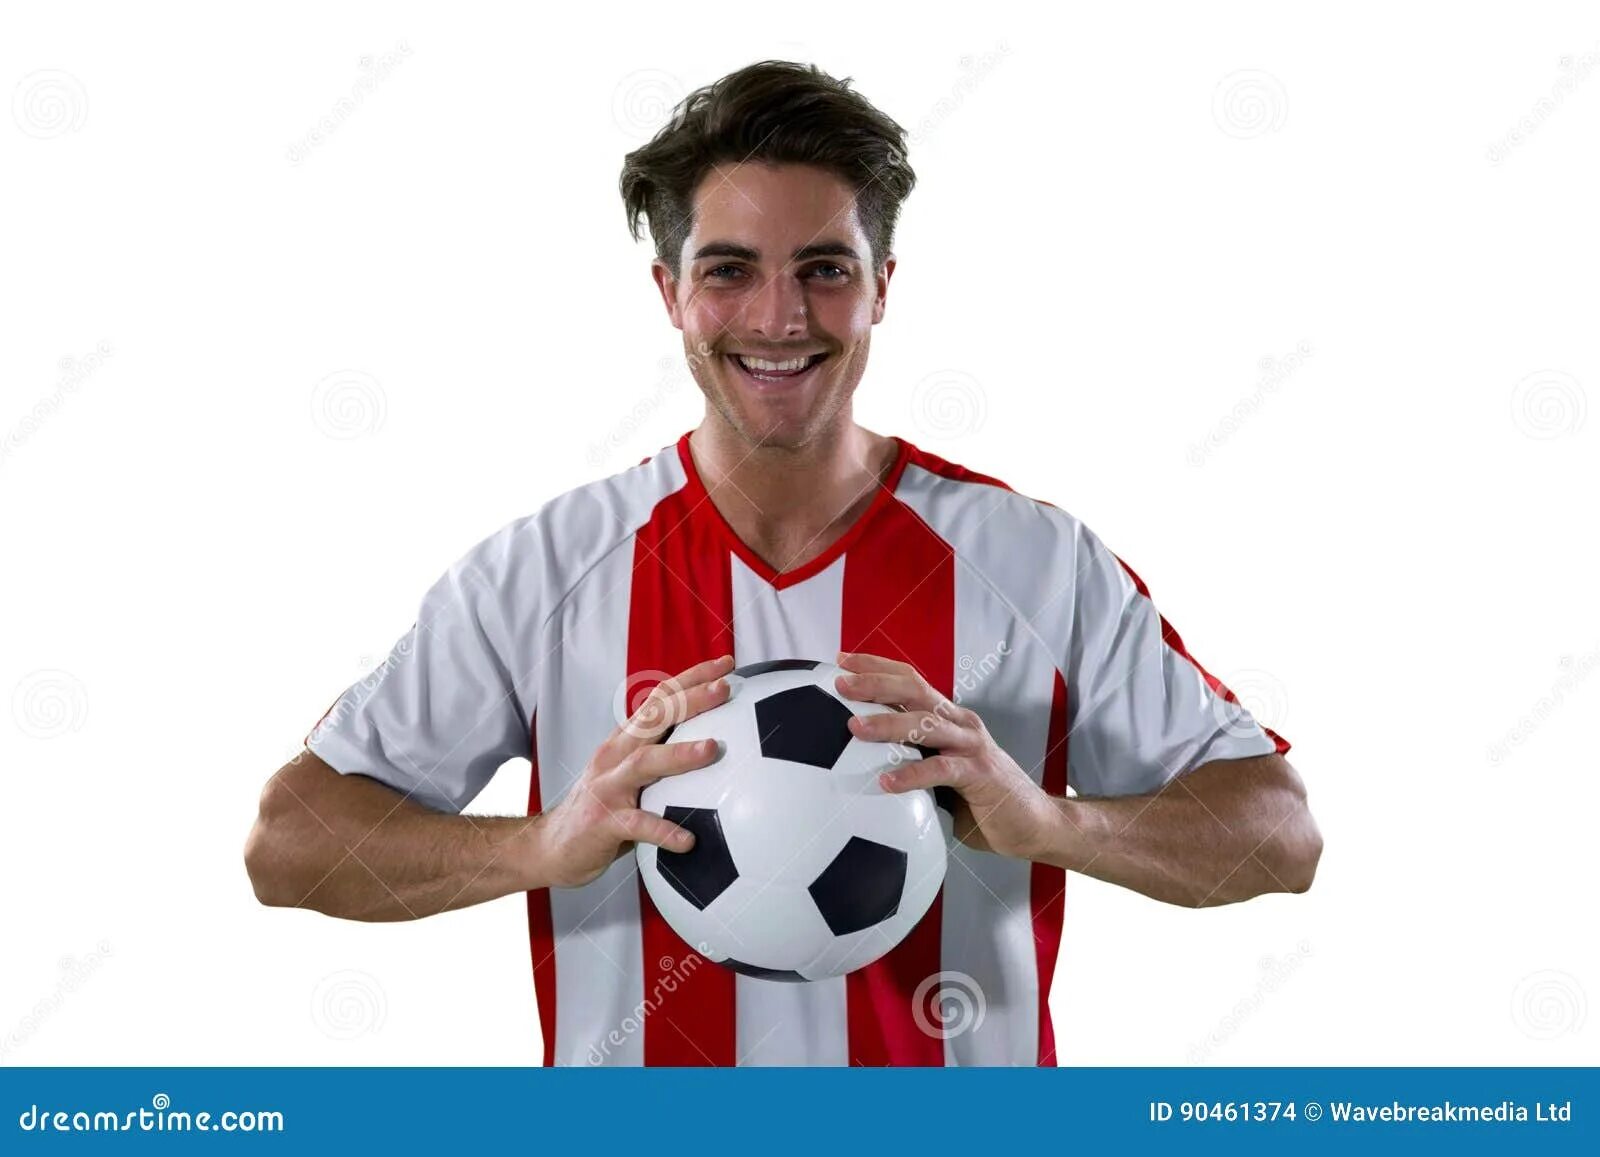 Футболист держит мяч. Футболисты держат в руках. Рука держит футбольный шарфик. Футболист держит мяч на губах. Hold players